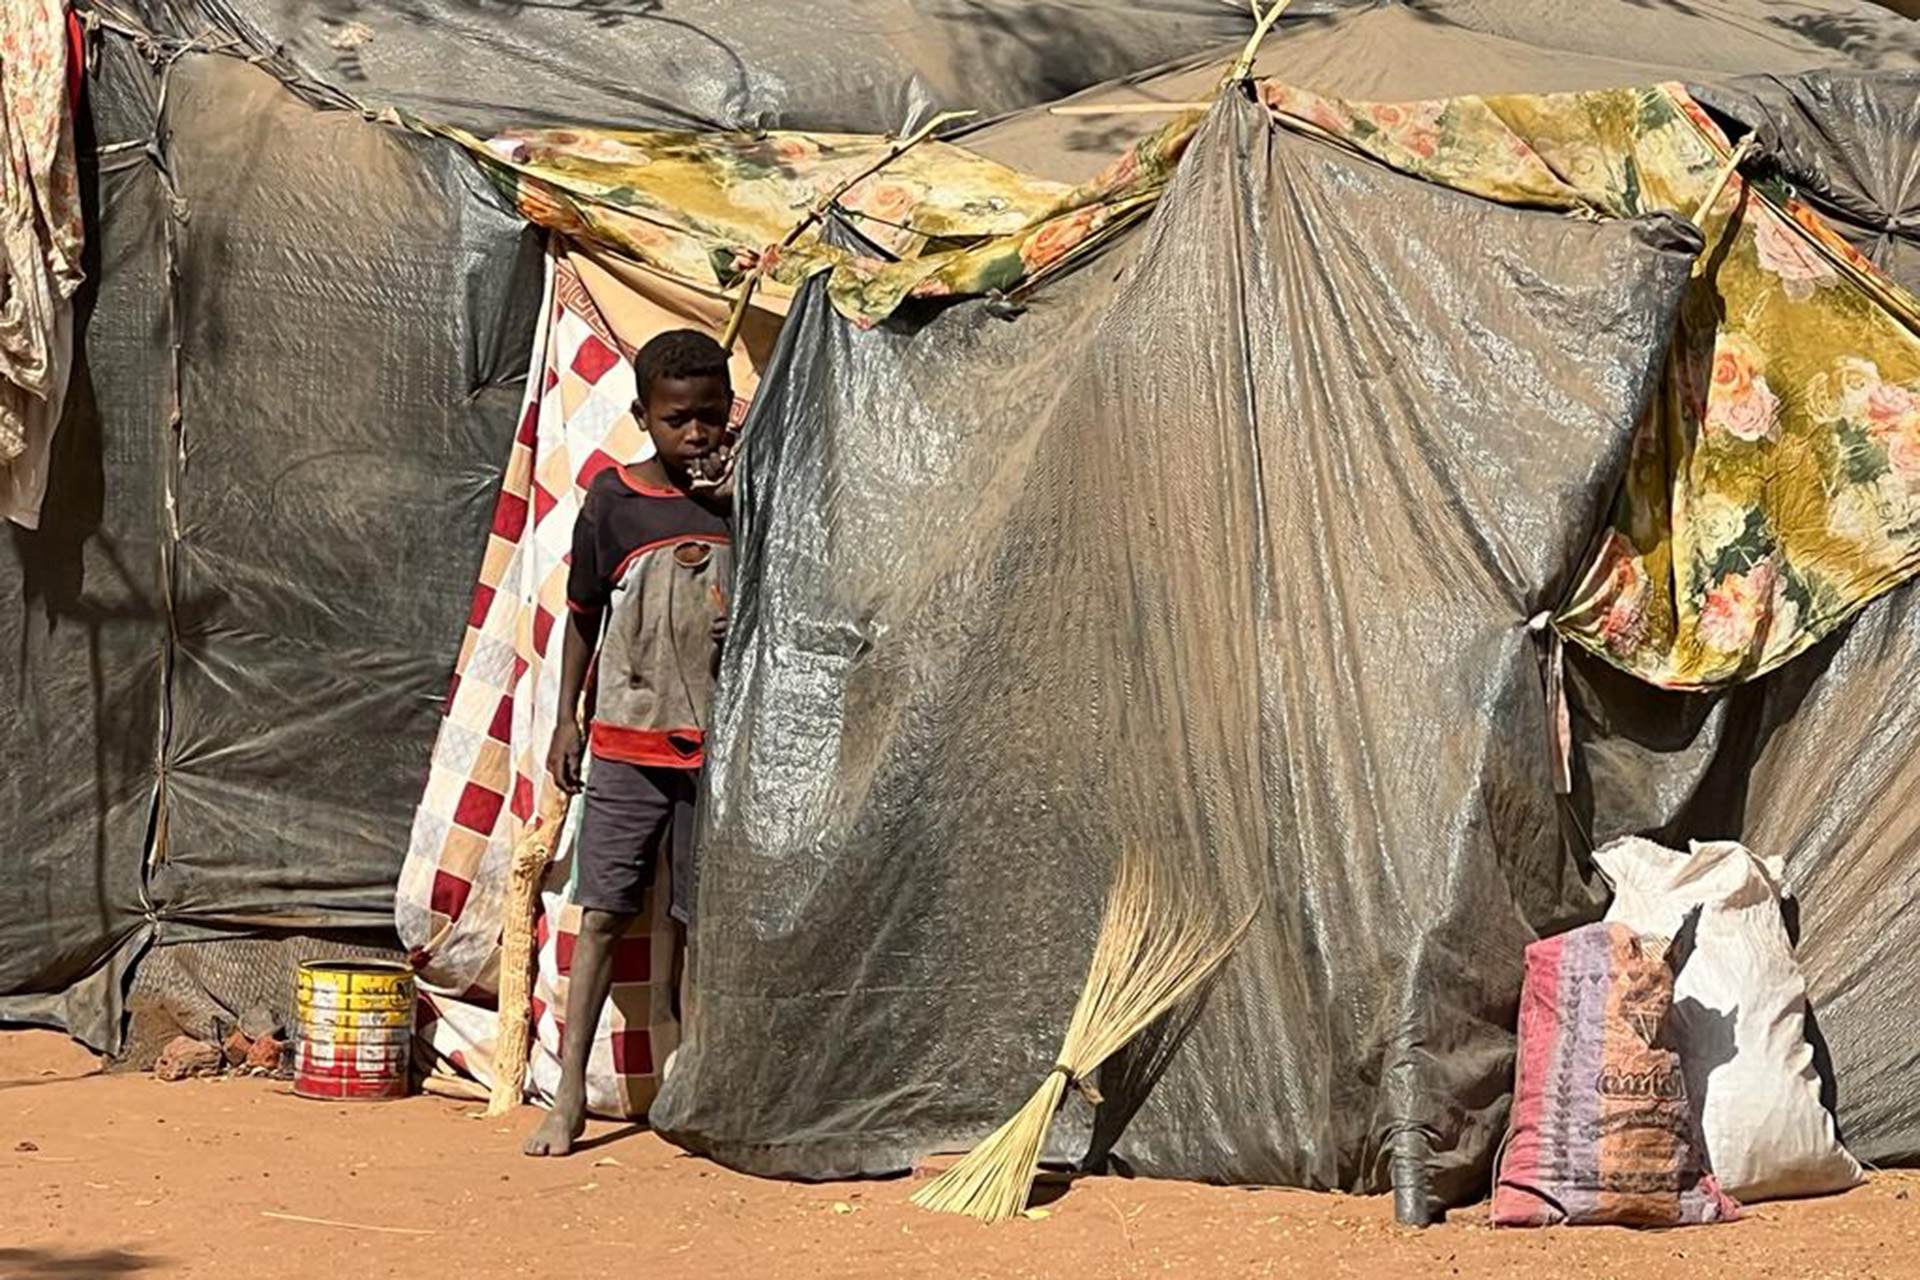 منظمات دولية تحذر من تفشي المجاعة في السودان | أخبار – البوكس نيوز